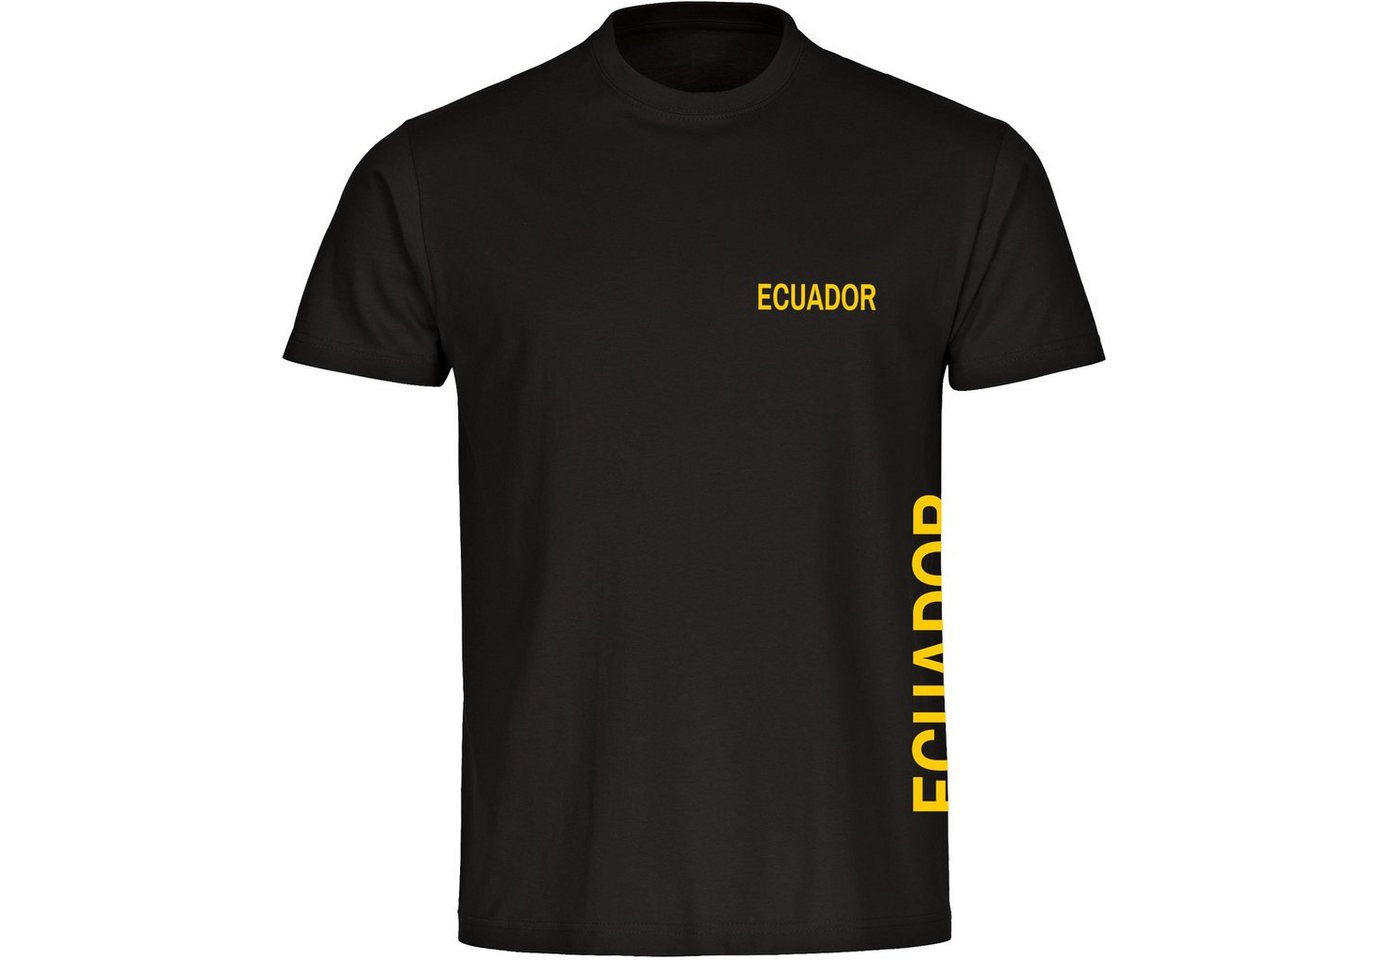 multifanshop T-Shirt Herren Ecuador - Brust & Seite - Männer von multifanshop